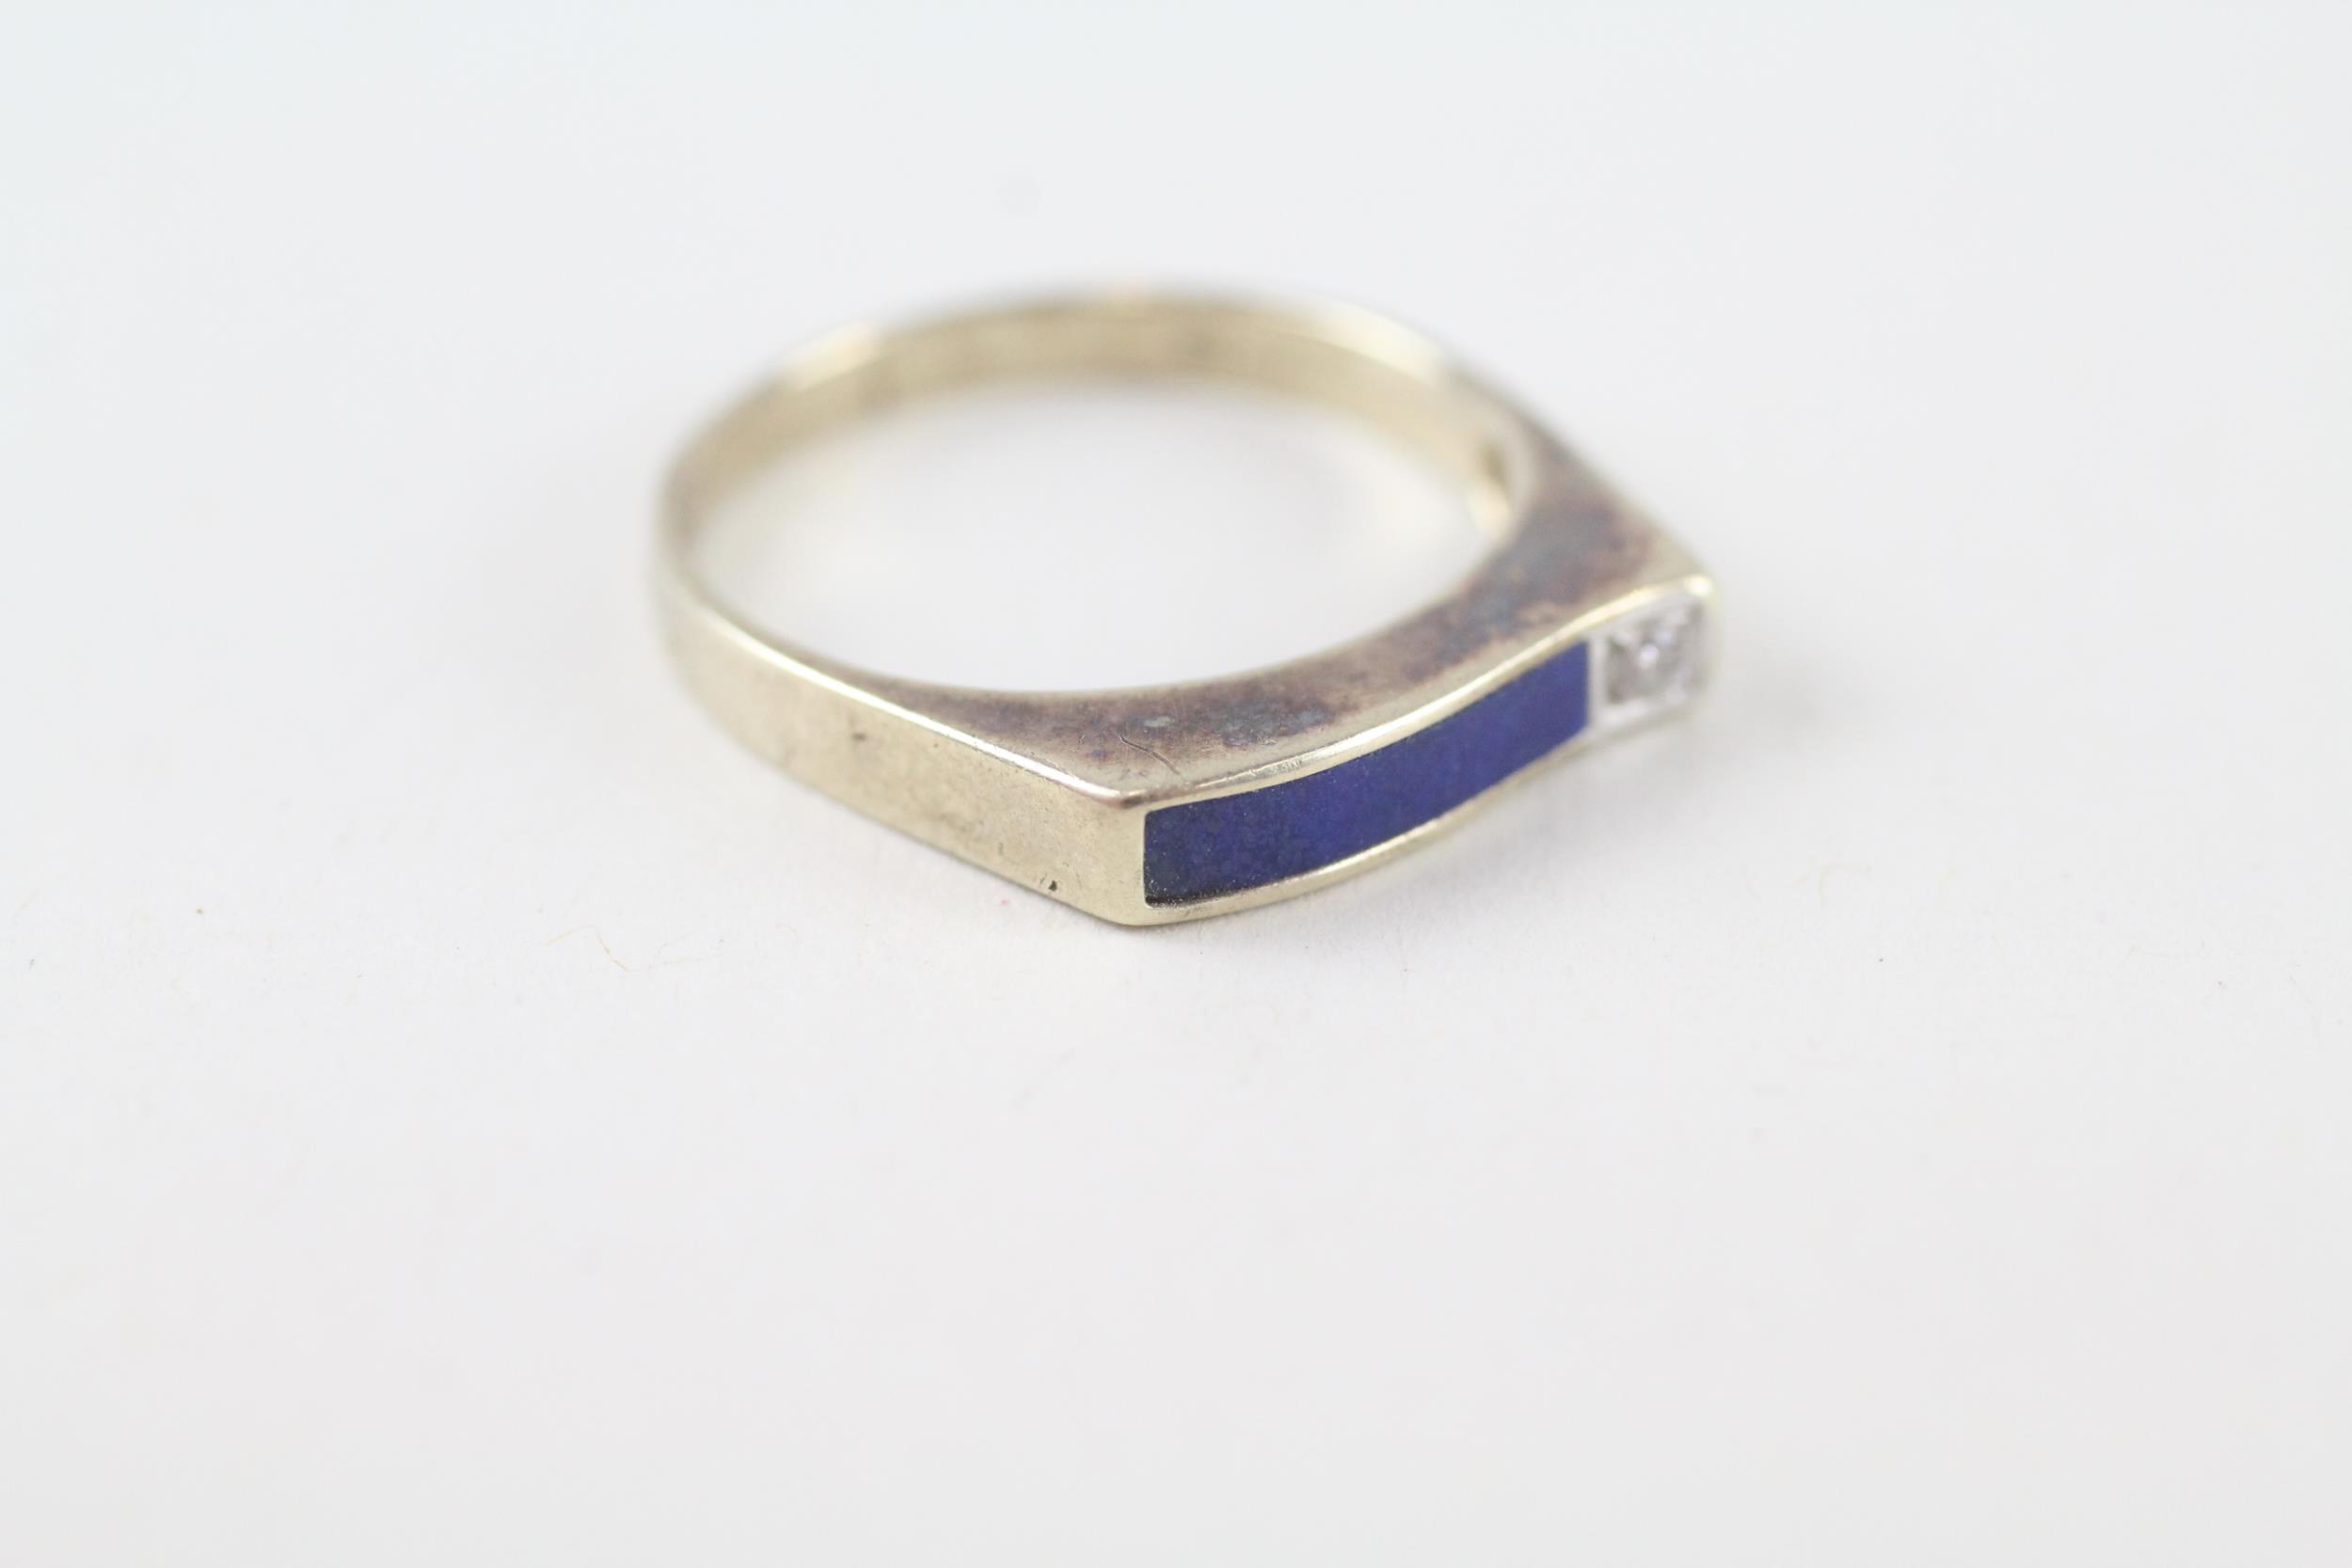 9ct gold vintage lapis lazuli & diamond ring (1.9g) Size M - Image 2 of 4